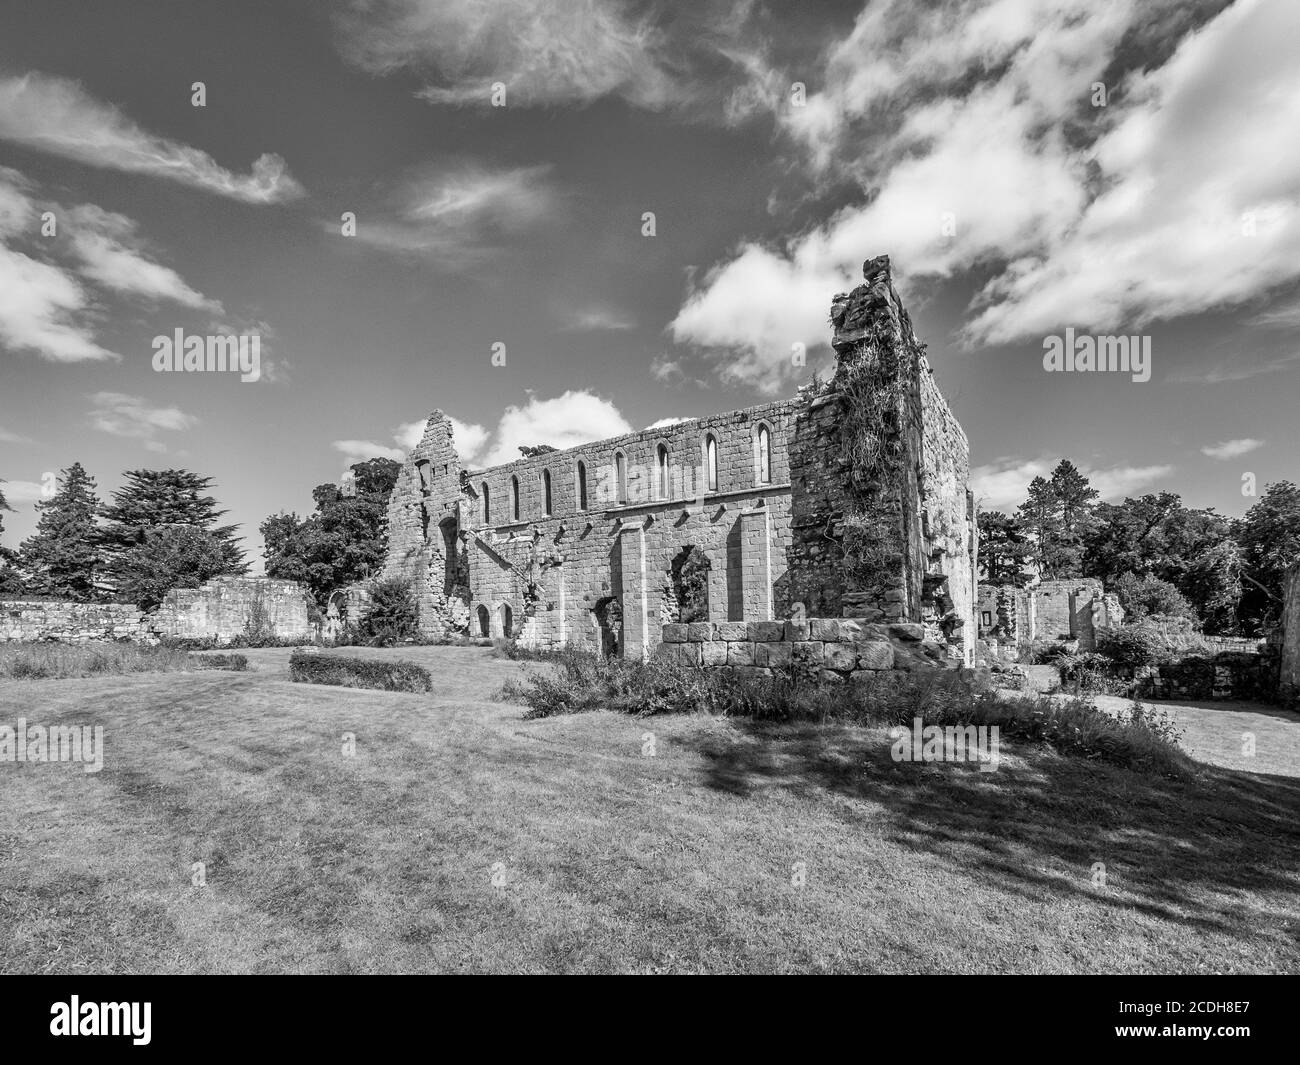 C'est les ruines du monastère cistercien du 11-12ème siècle De l'abbaye de Jervaulx dans les Dales du Yorkshire du Nord près de Village d'East Witton Banque D'Images